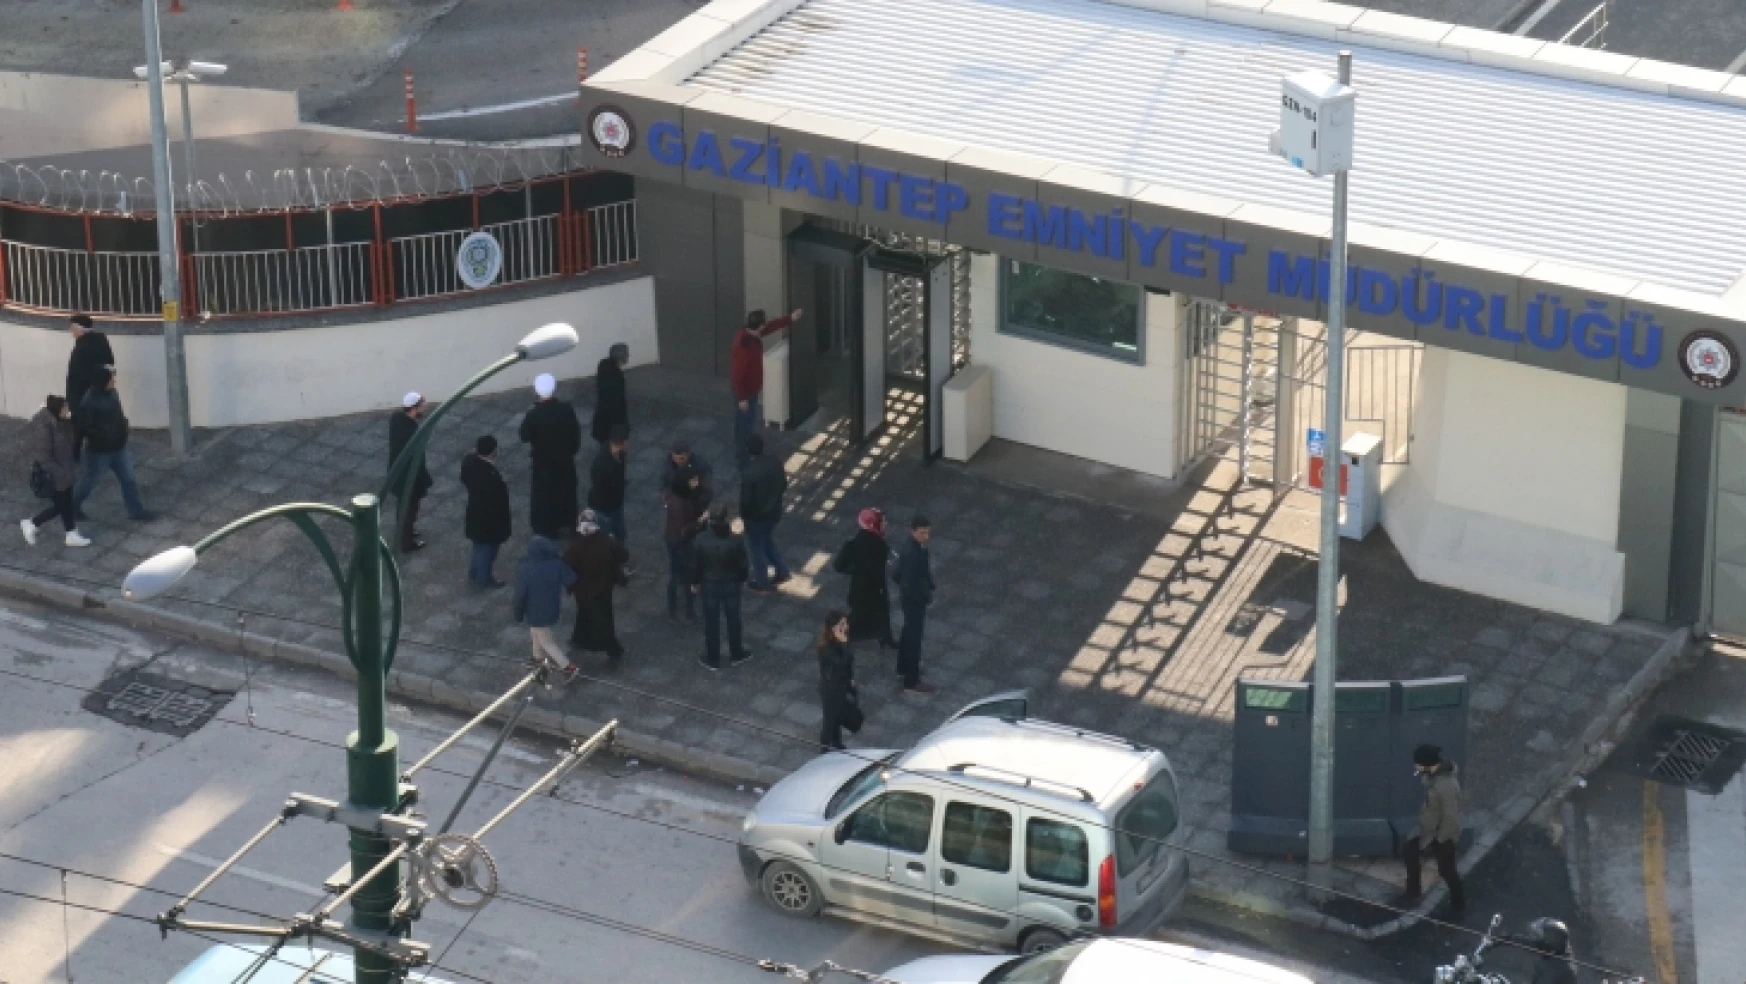 Gaziantep Emniyet Müdürlüğü'ne saldırı girişimi